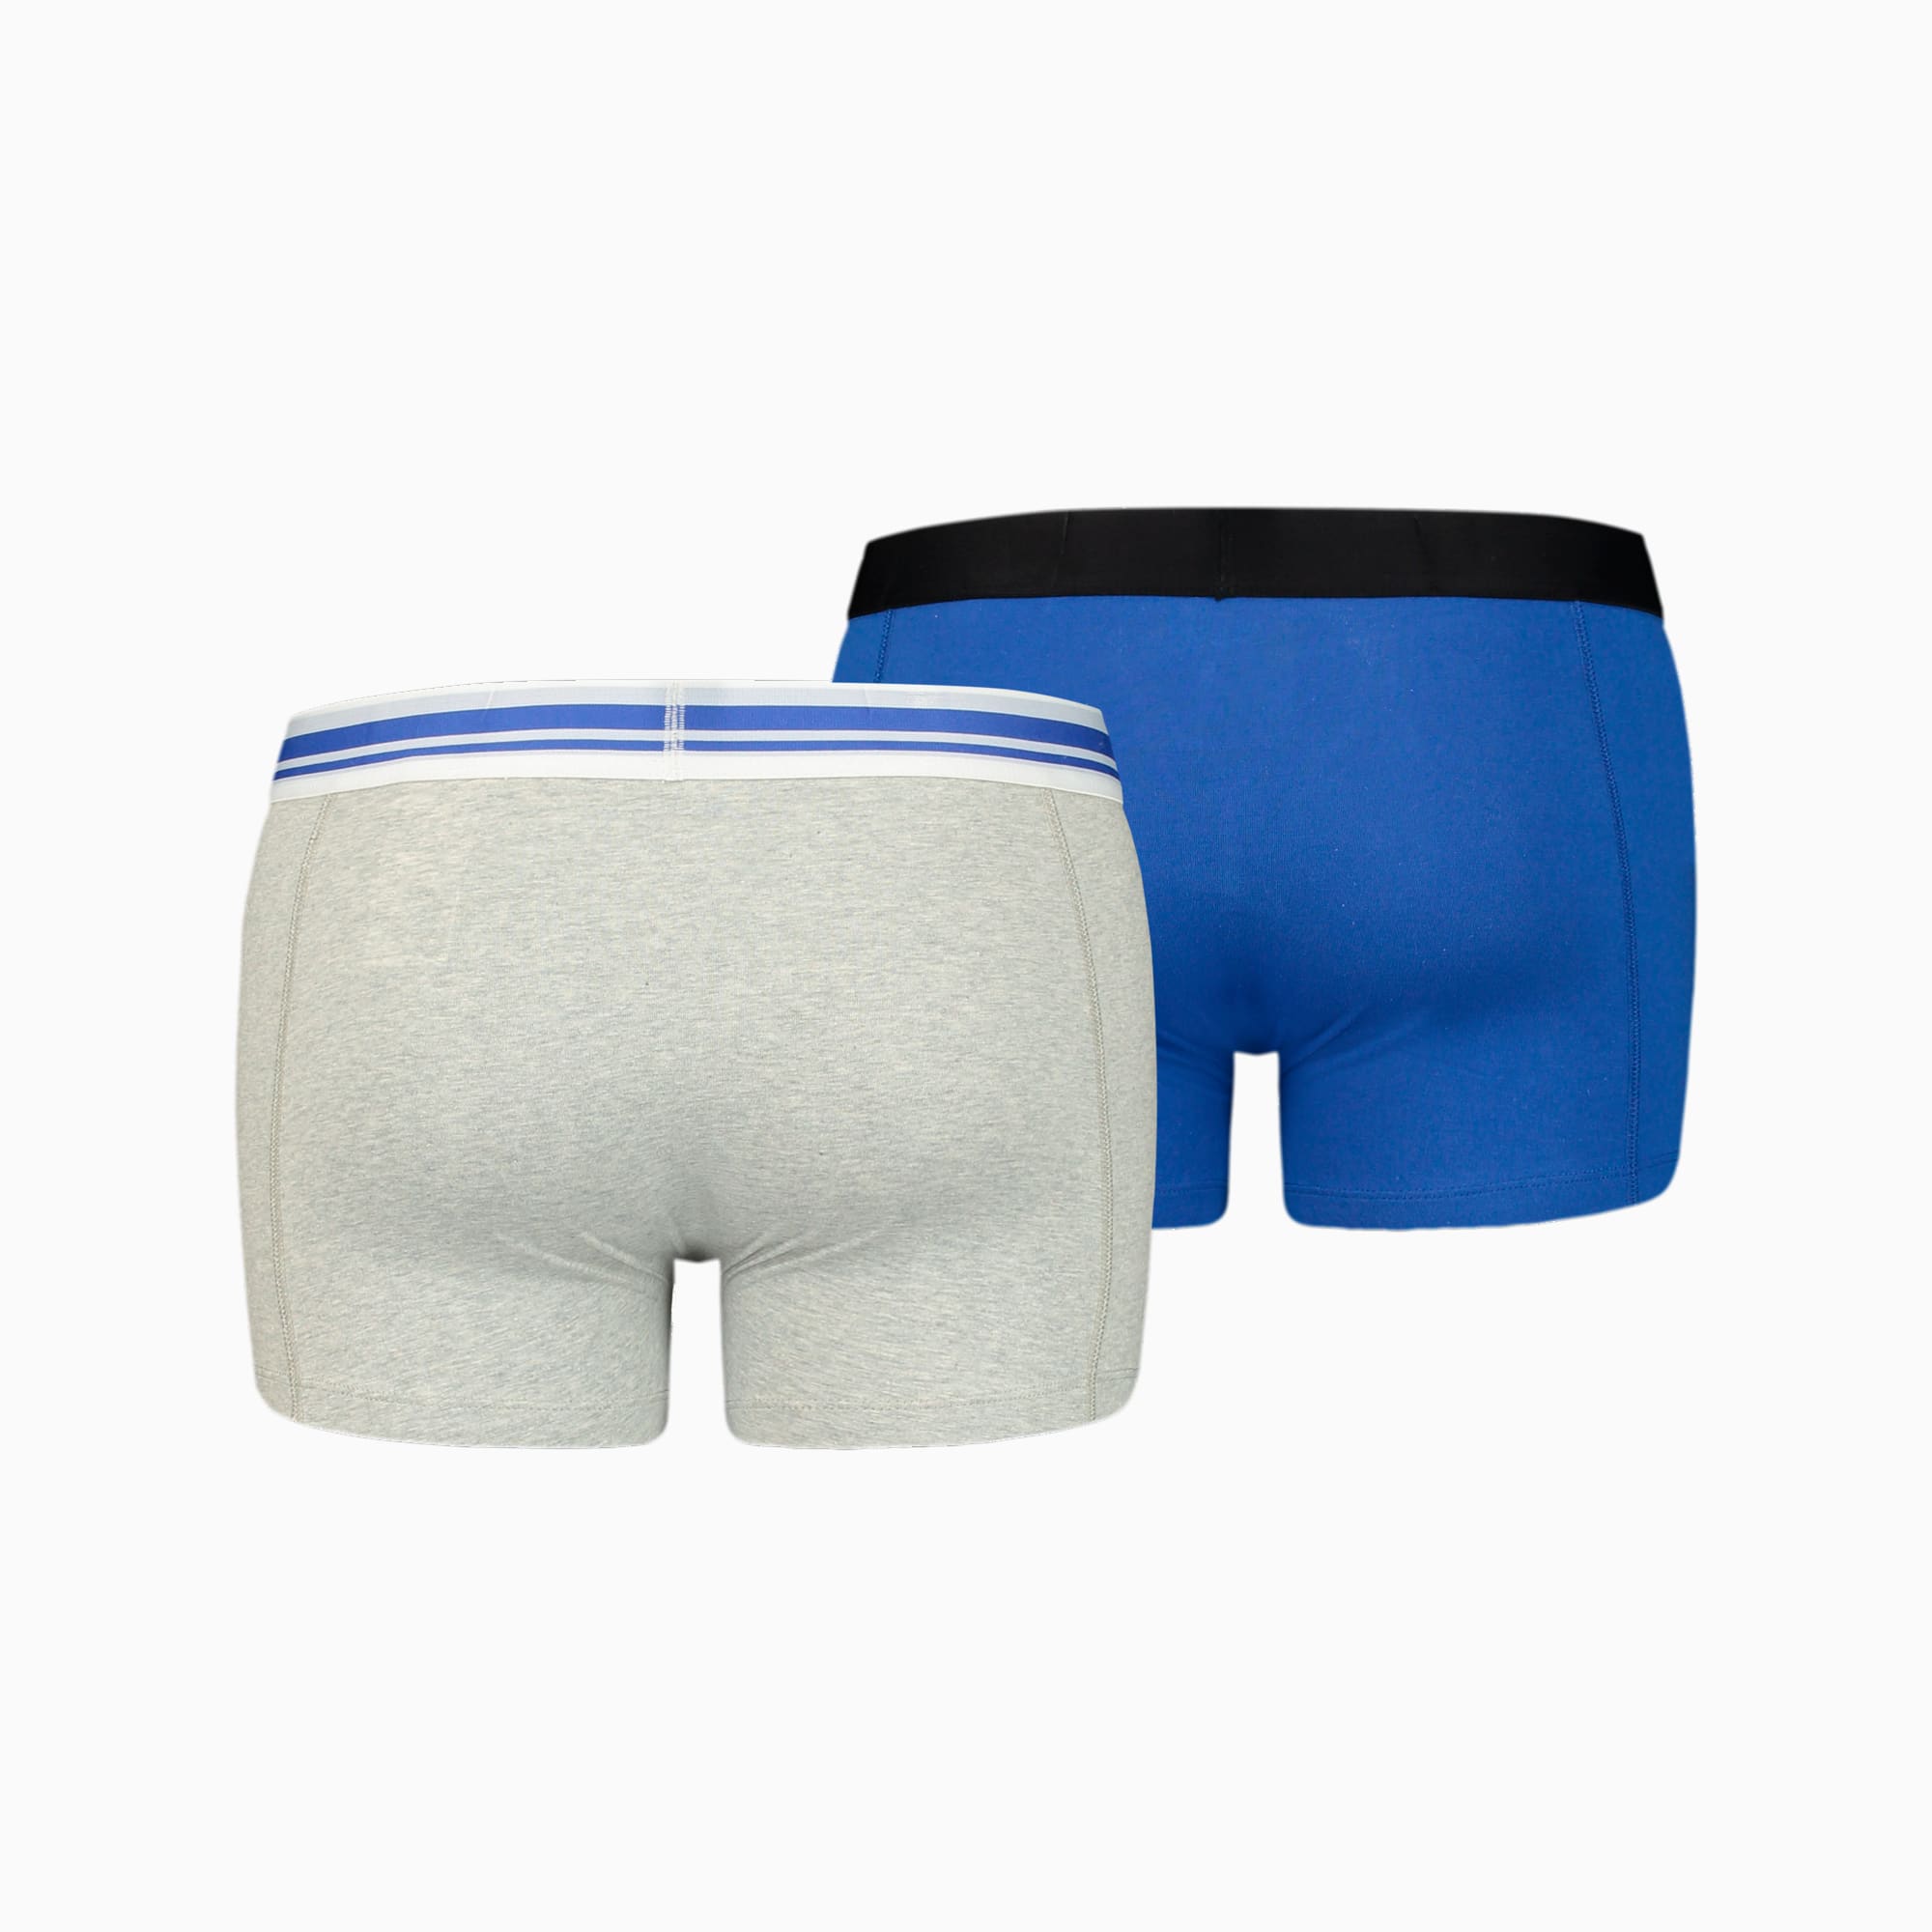 PUMA Placed Logo Herren-Boxershorts 2er-Pack, Mit Grau Melange, Grau/Blau, Größe: S, Kleidung